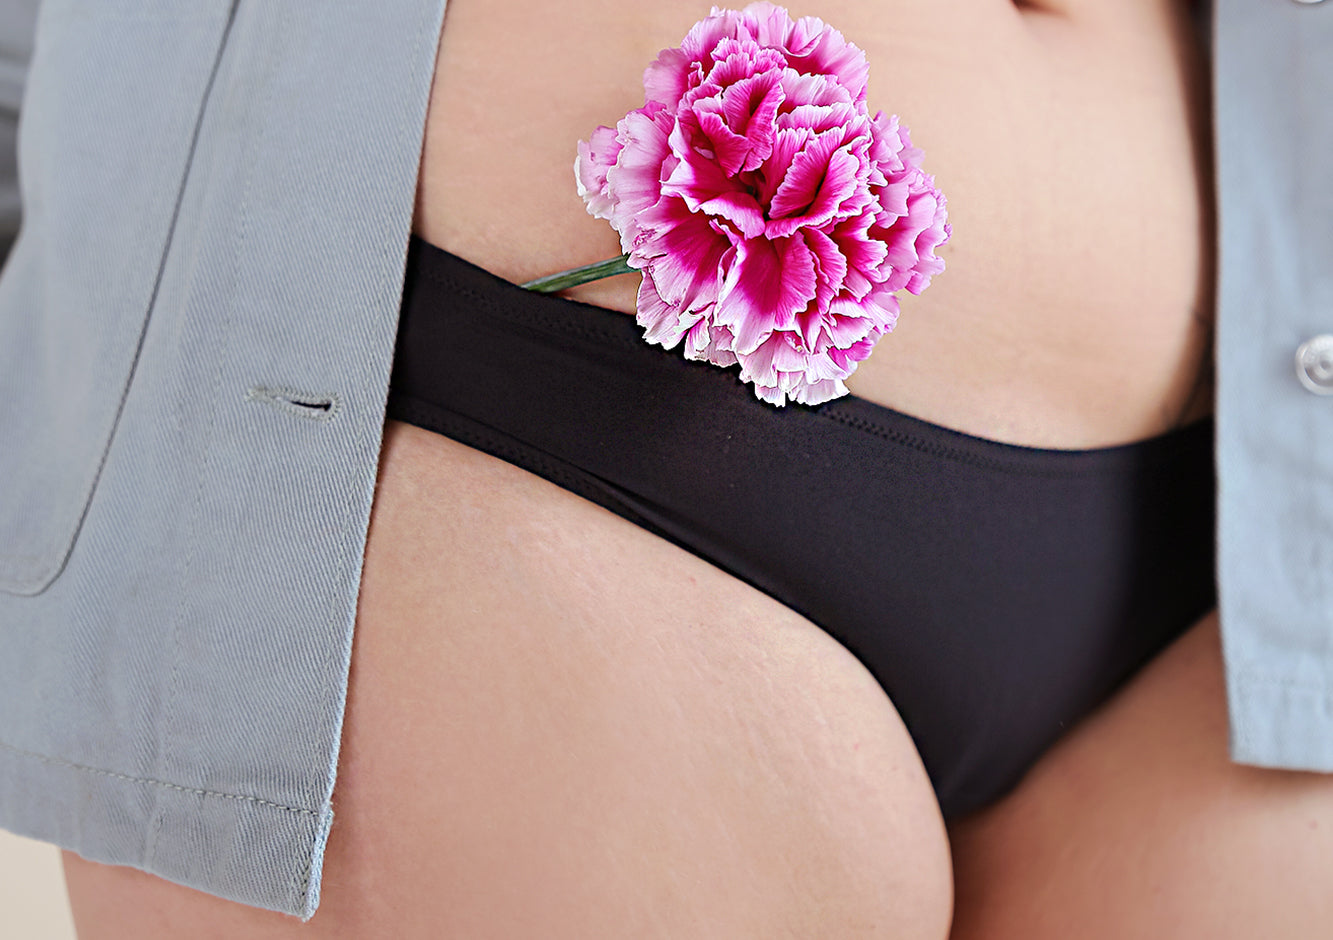 Emma noire- culotte menstruelle flux moyen Blooming